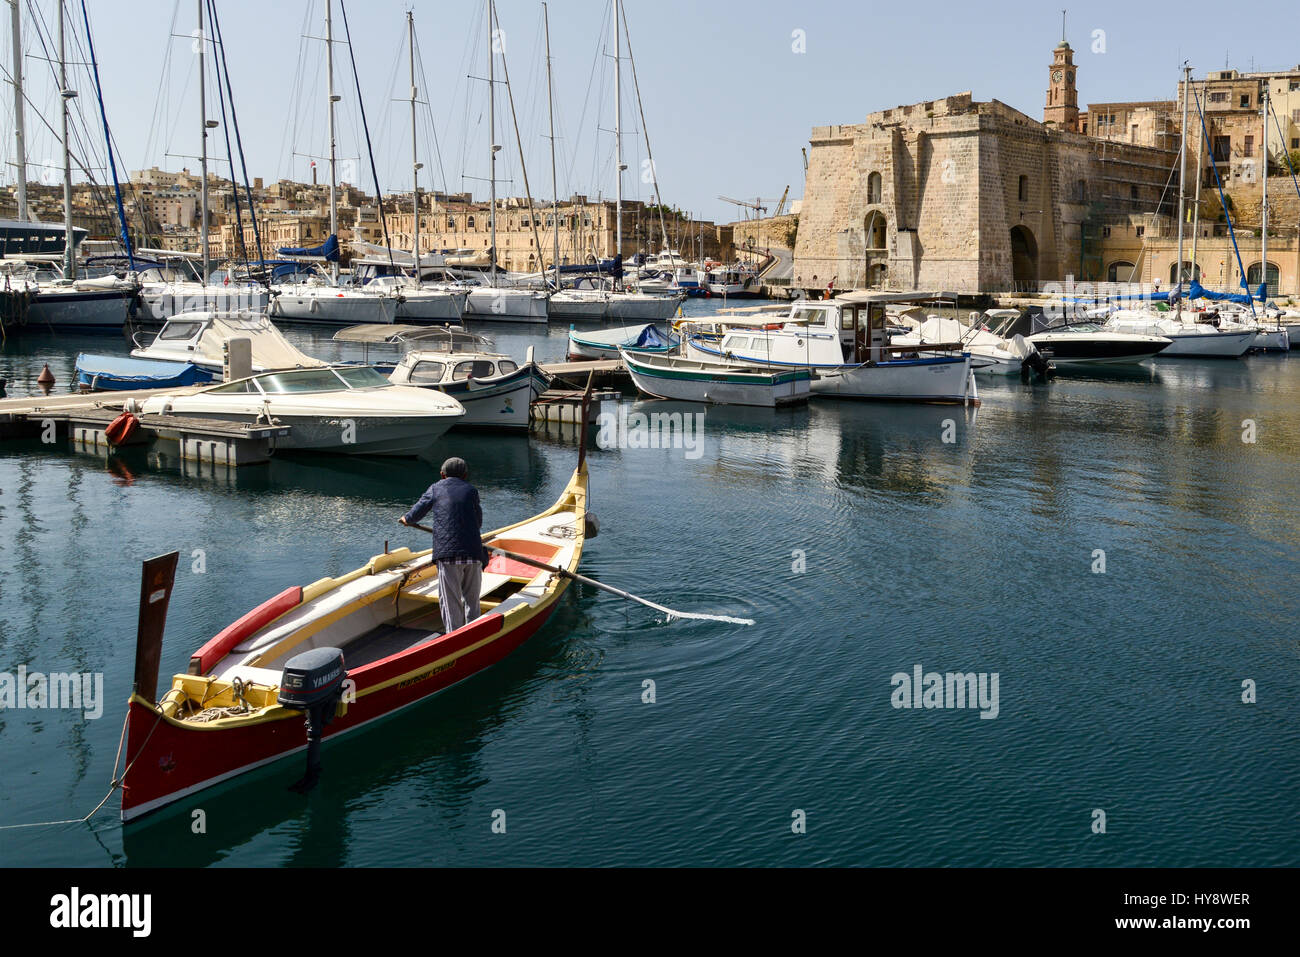 A dgħajsa, a traditional water taxi from Malta. Dockyard Creek, Birgu, Valletta. Stock Photo